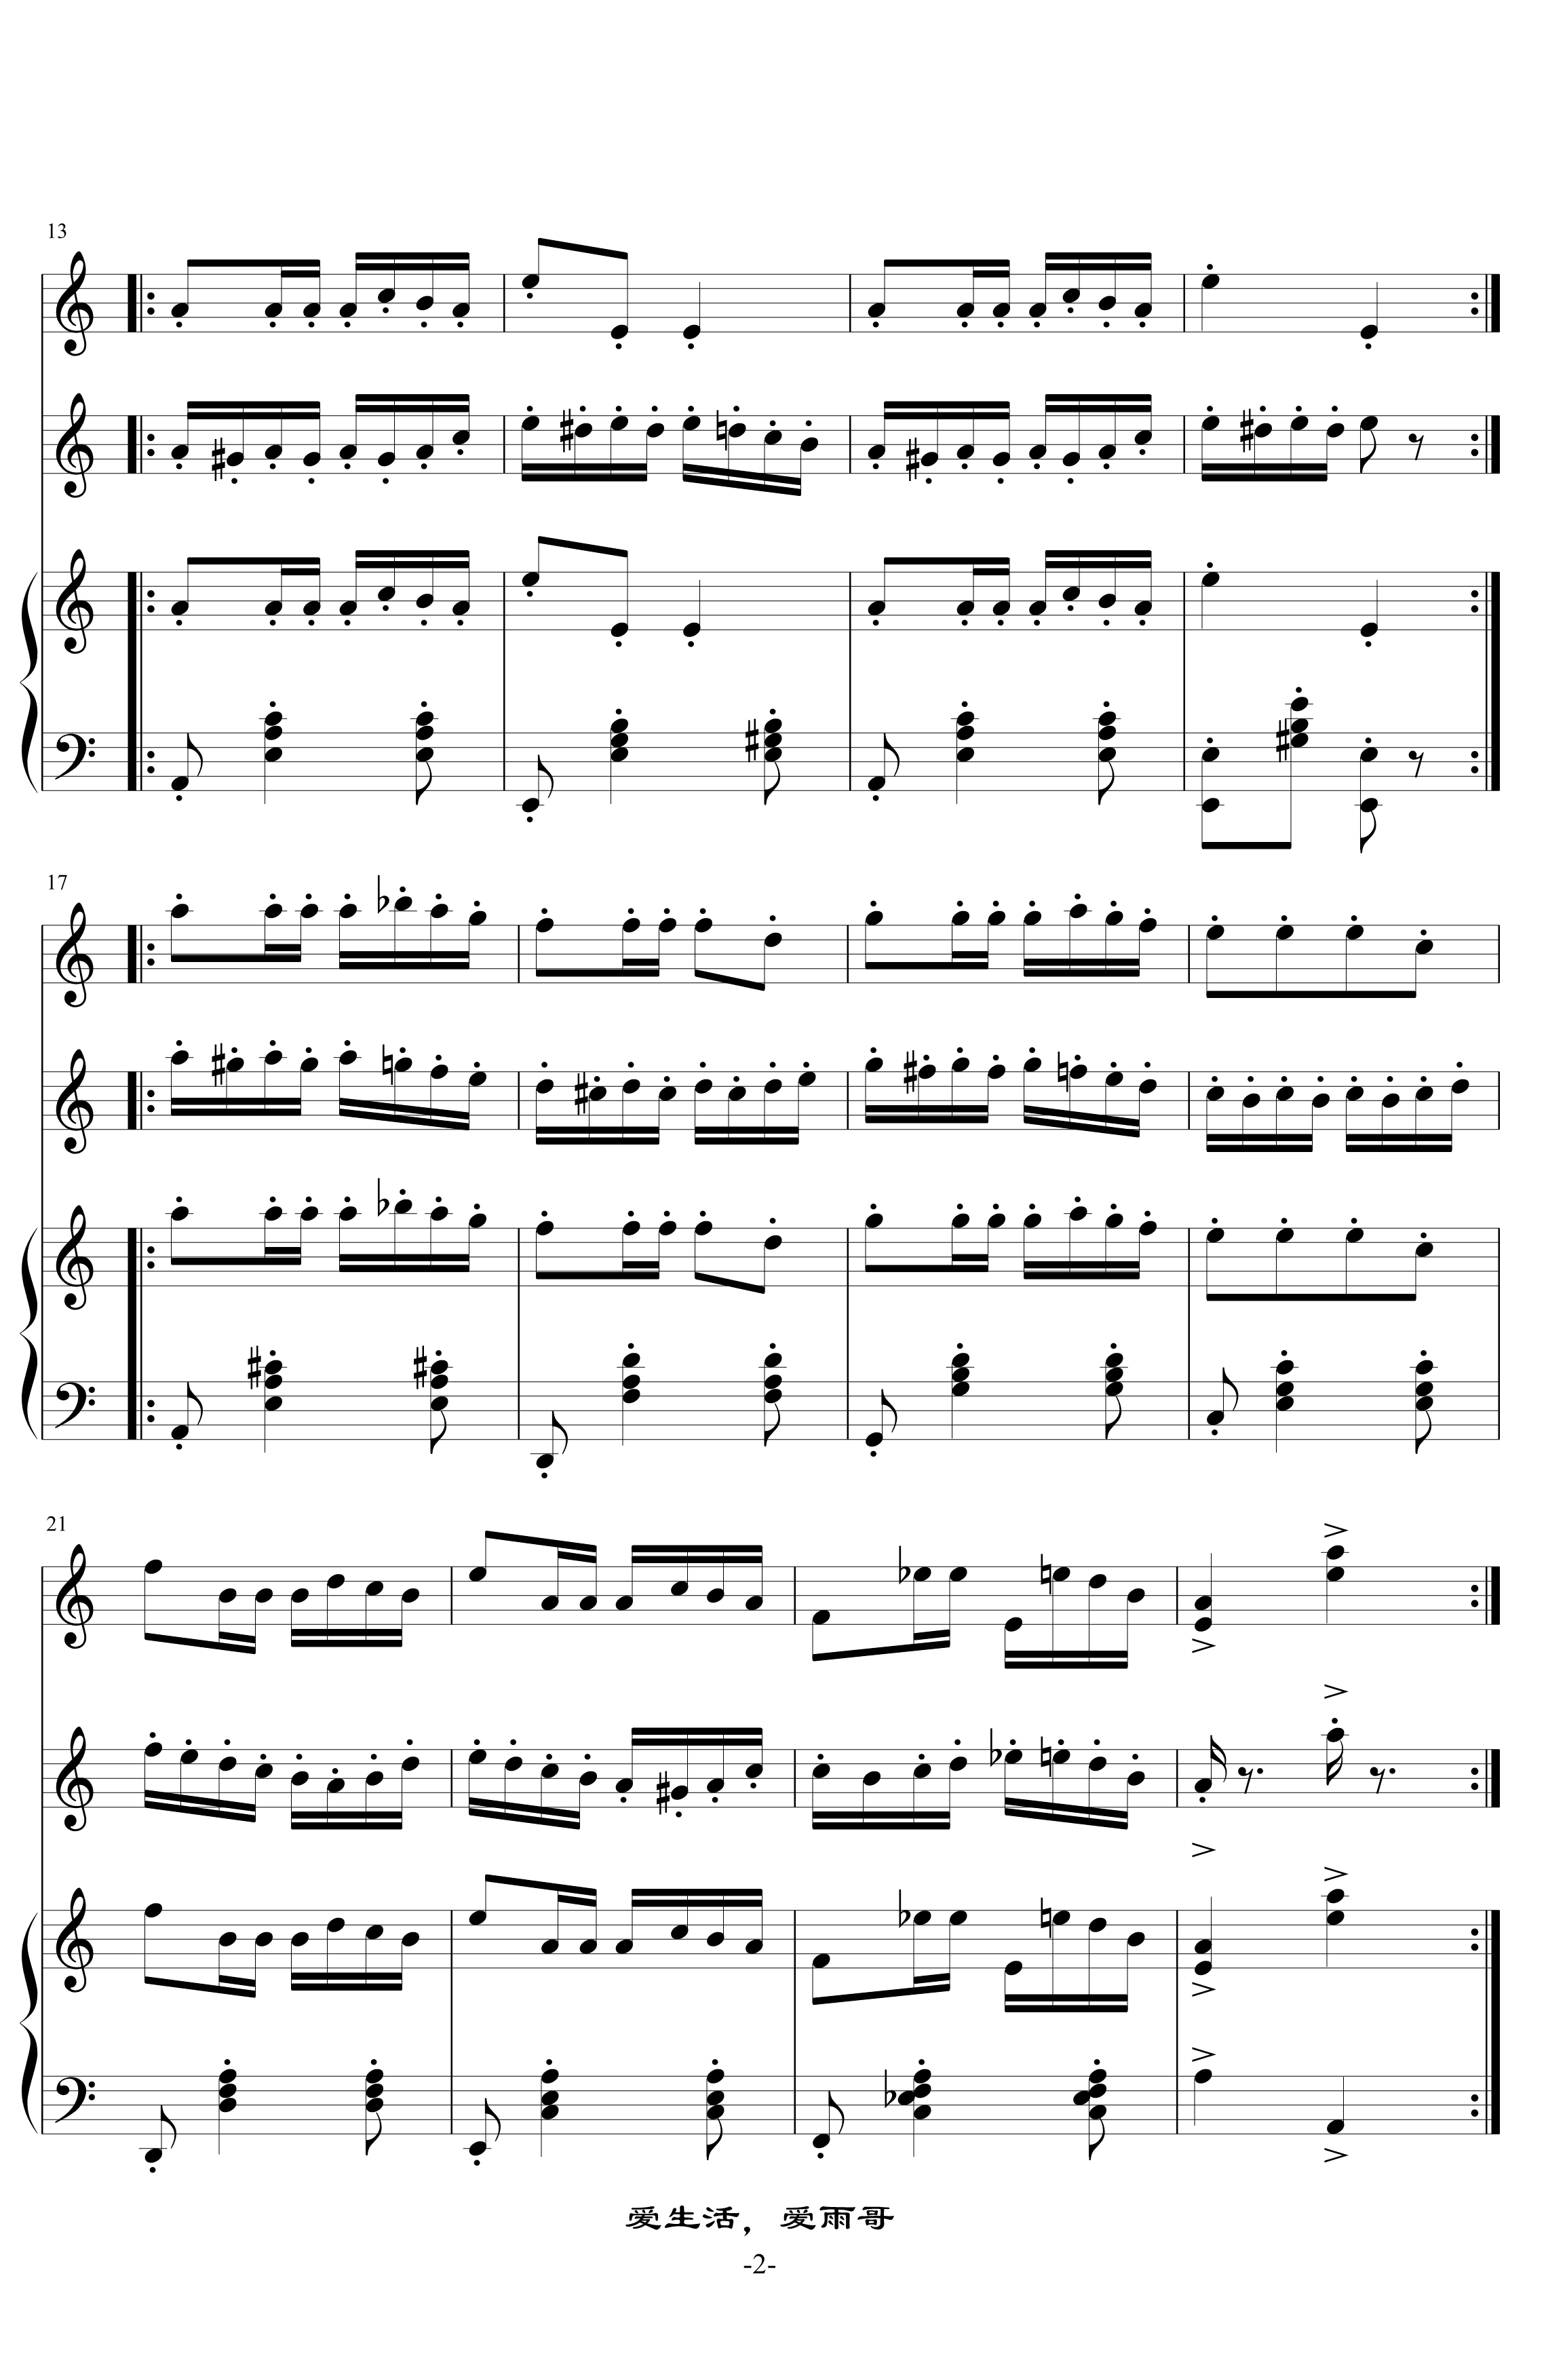 帕格尼尼随想曲24钢琴谱-帕格尼尼2